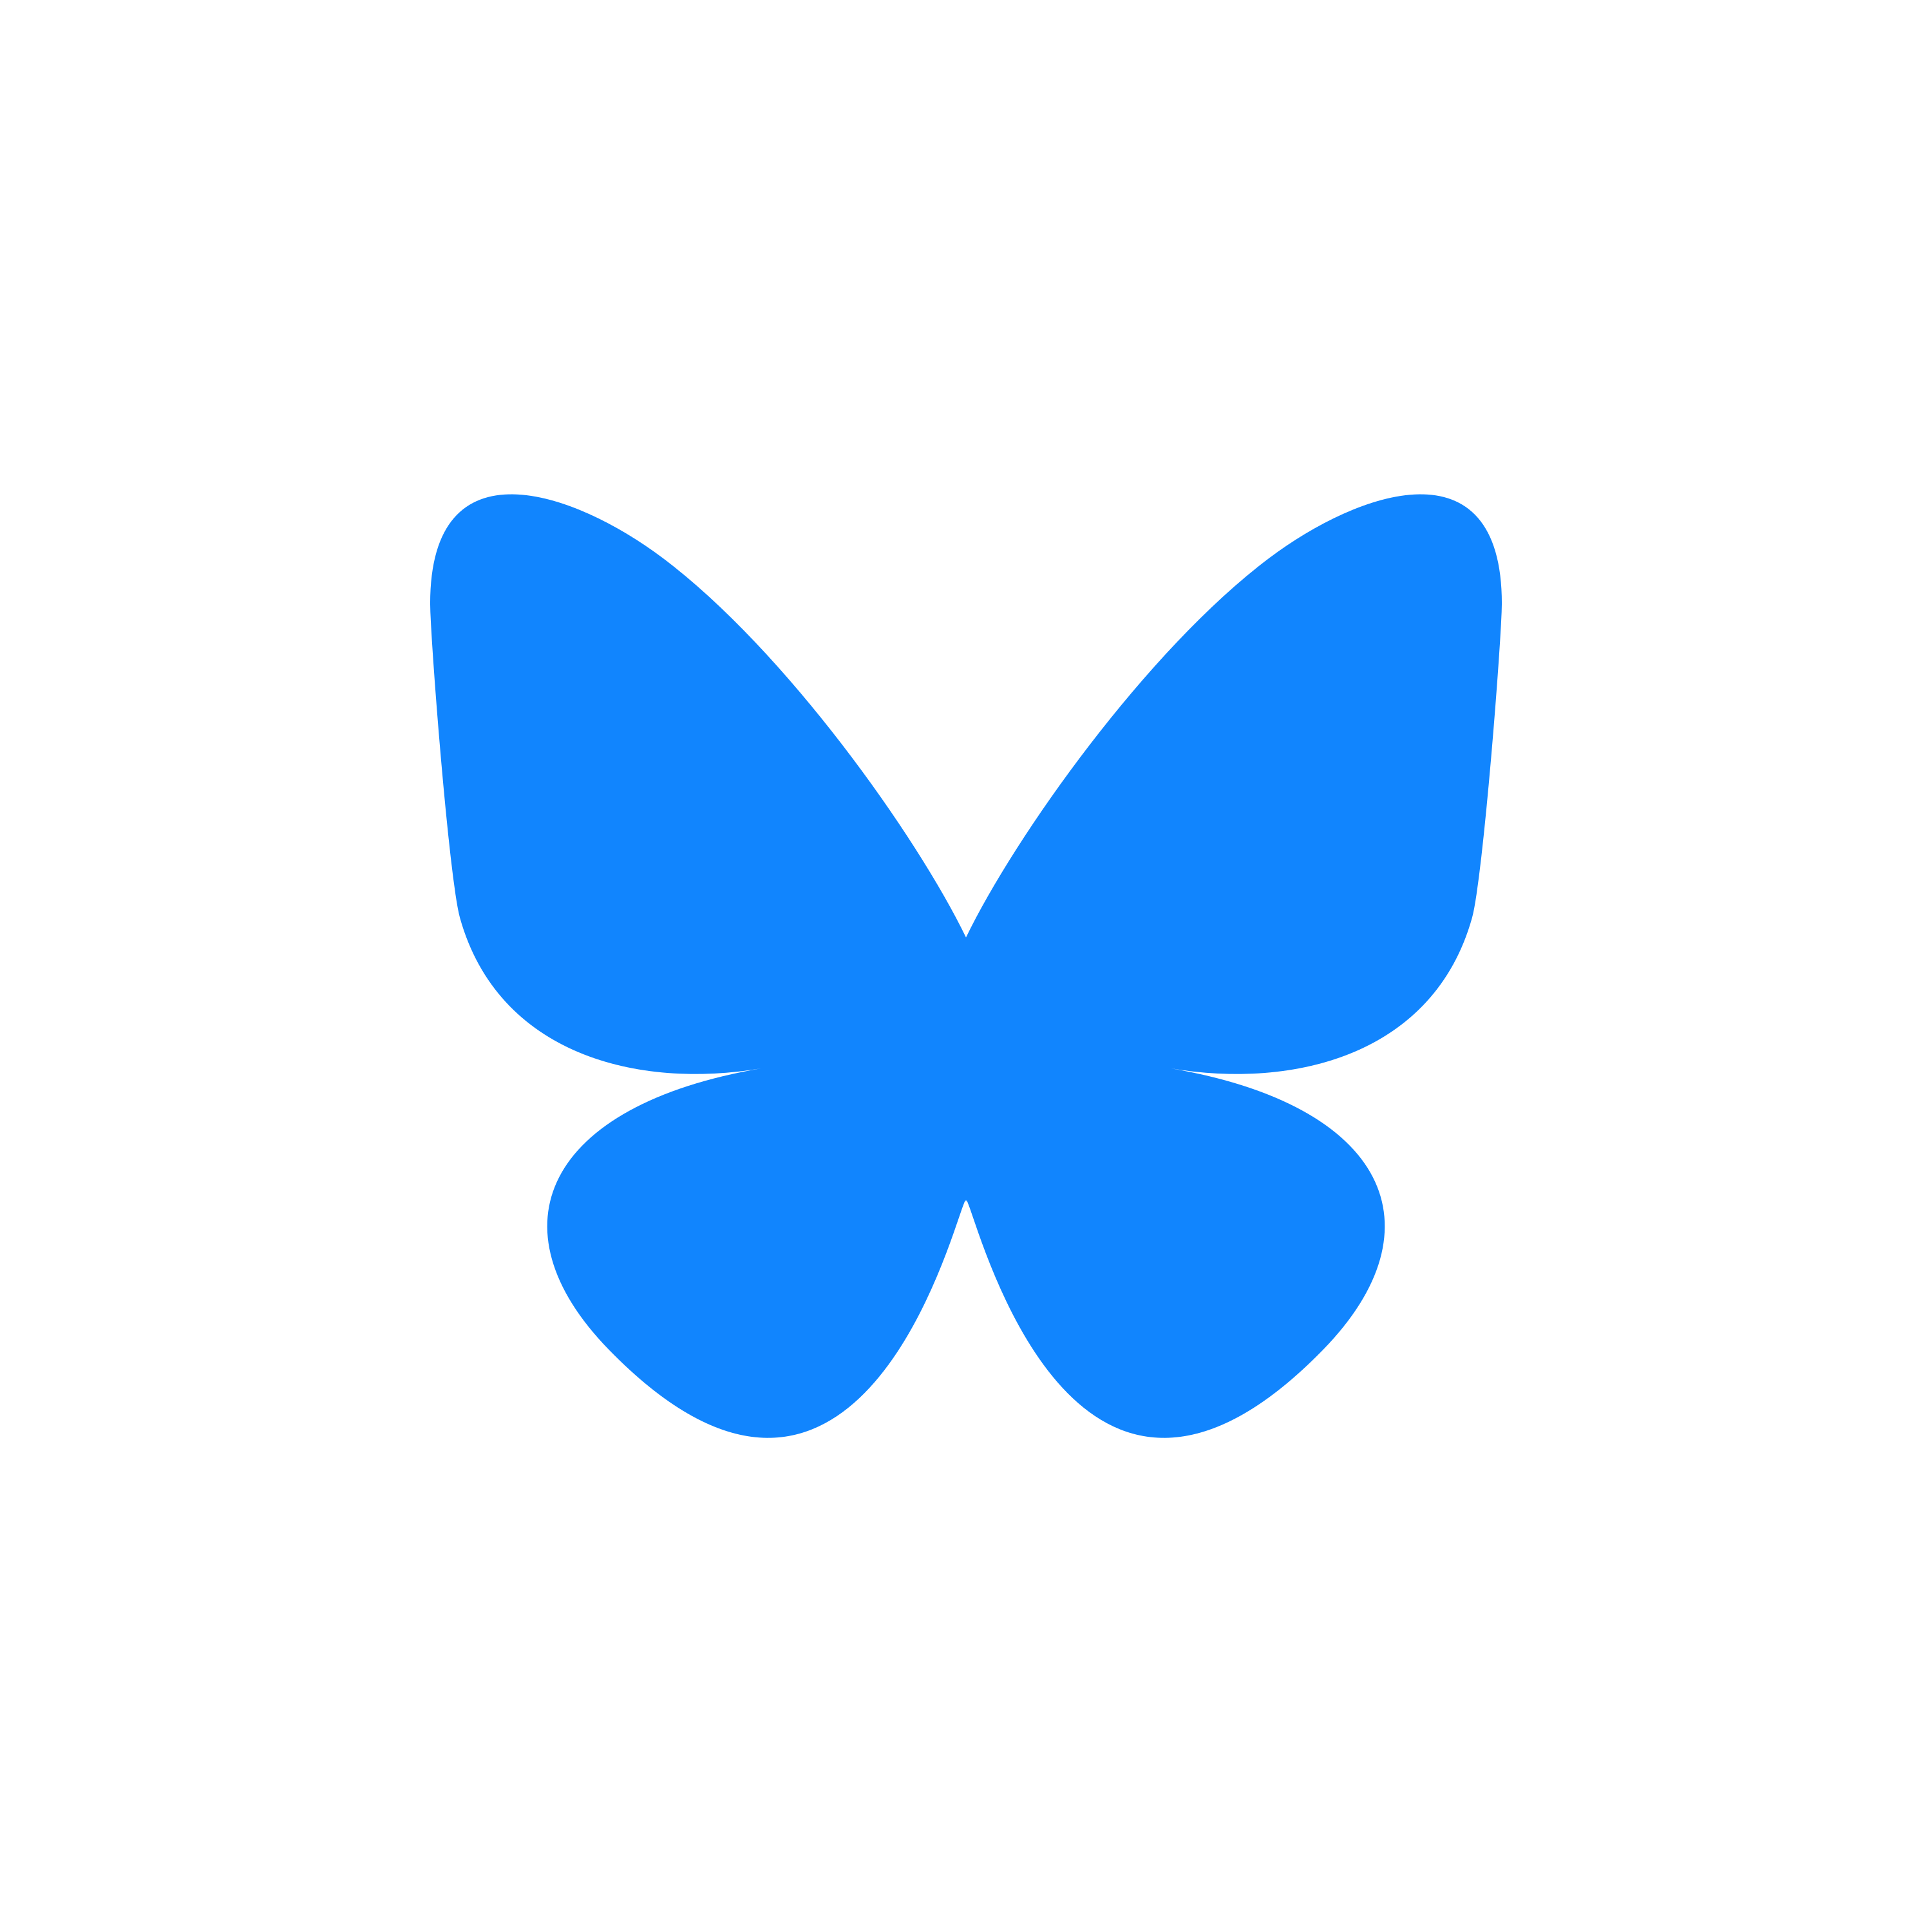 Bluesky Logo  Transparent Image